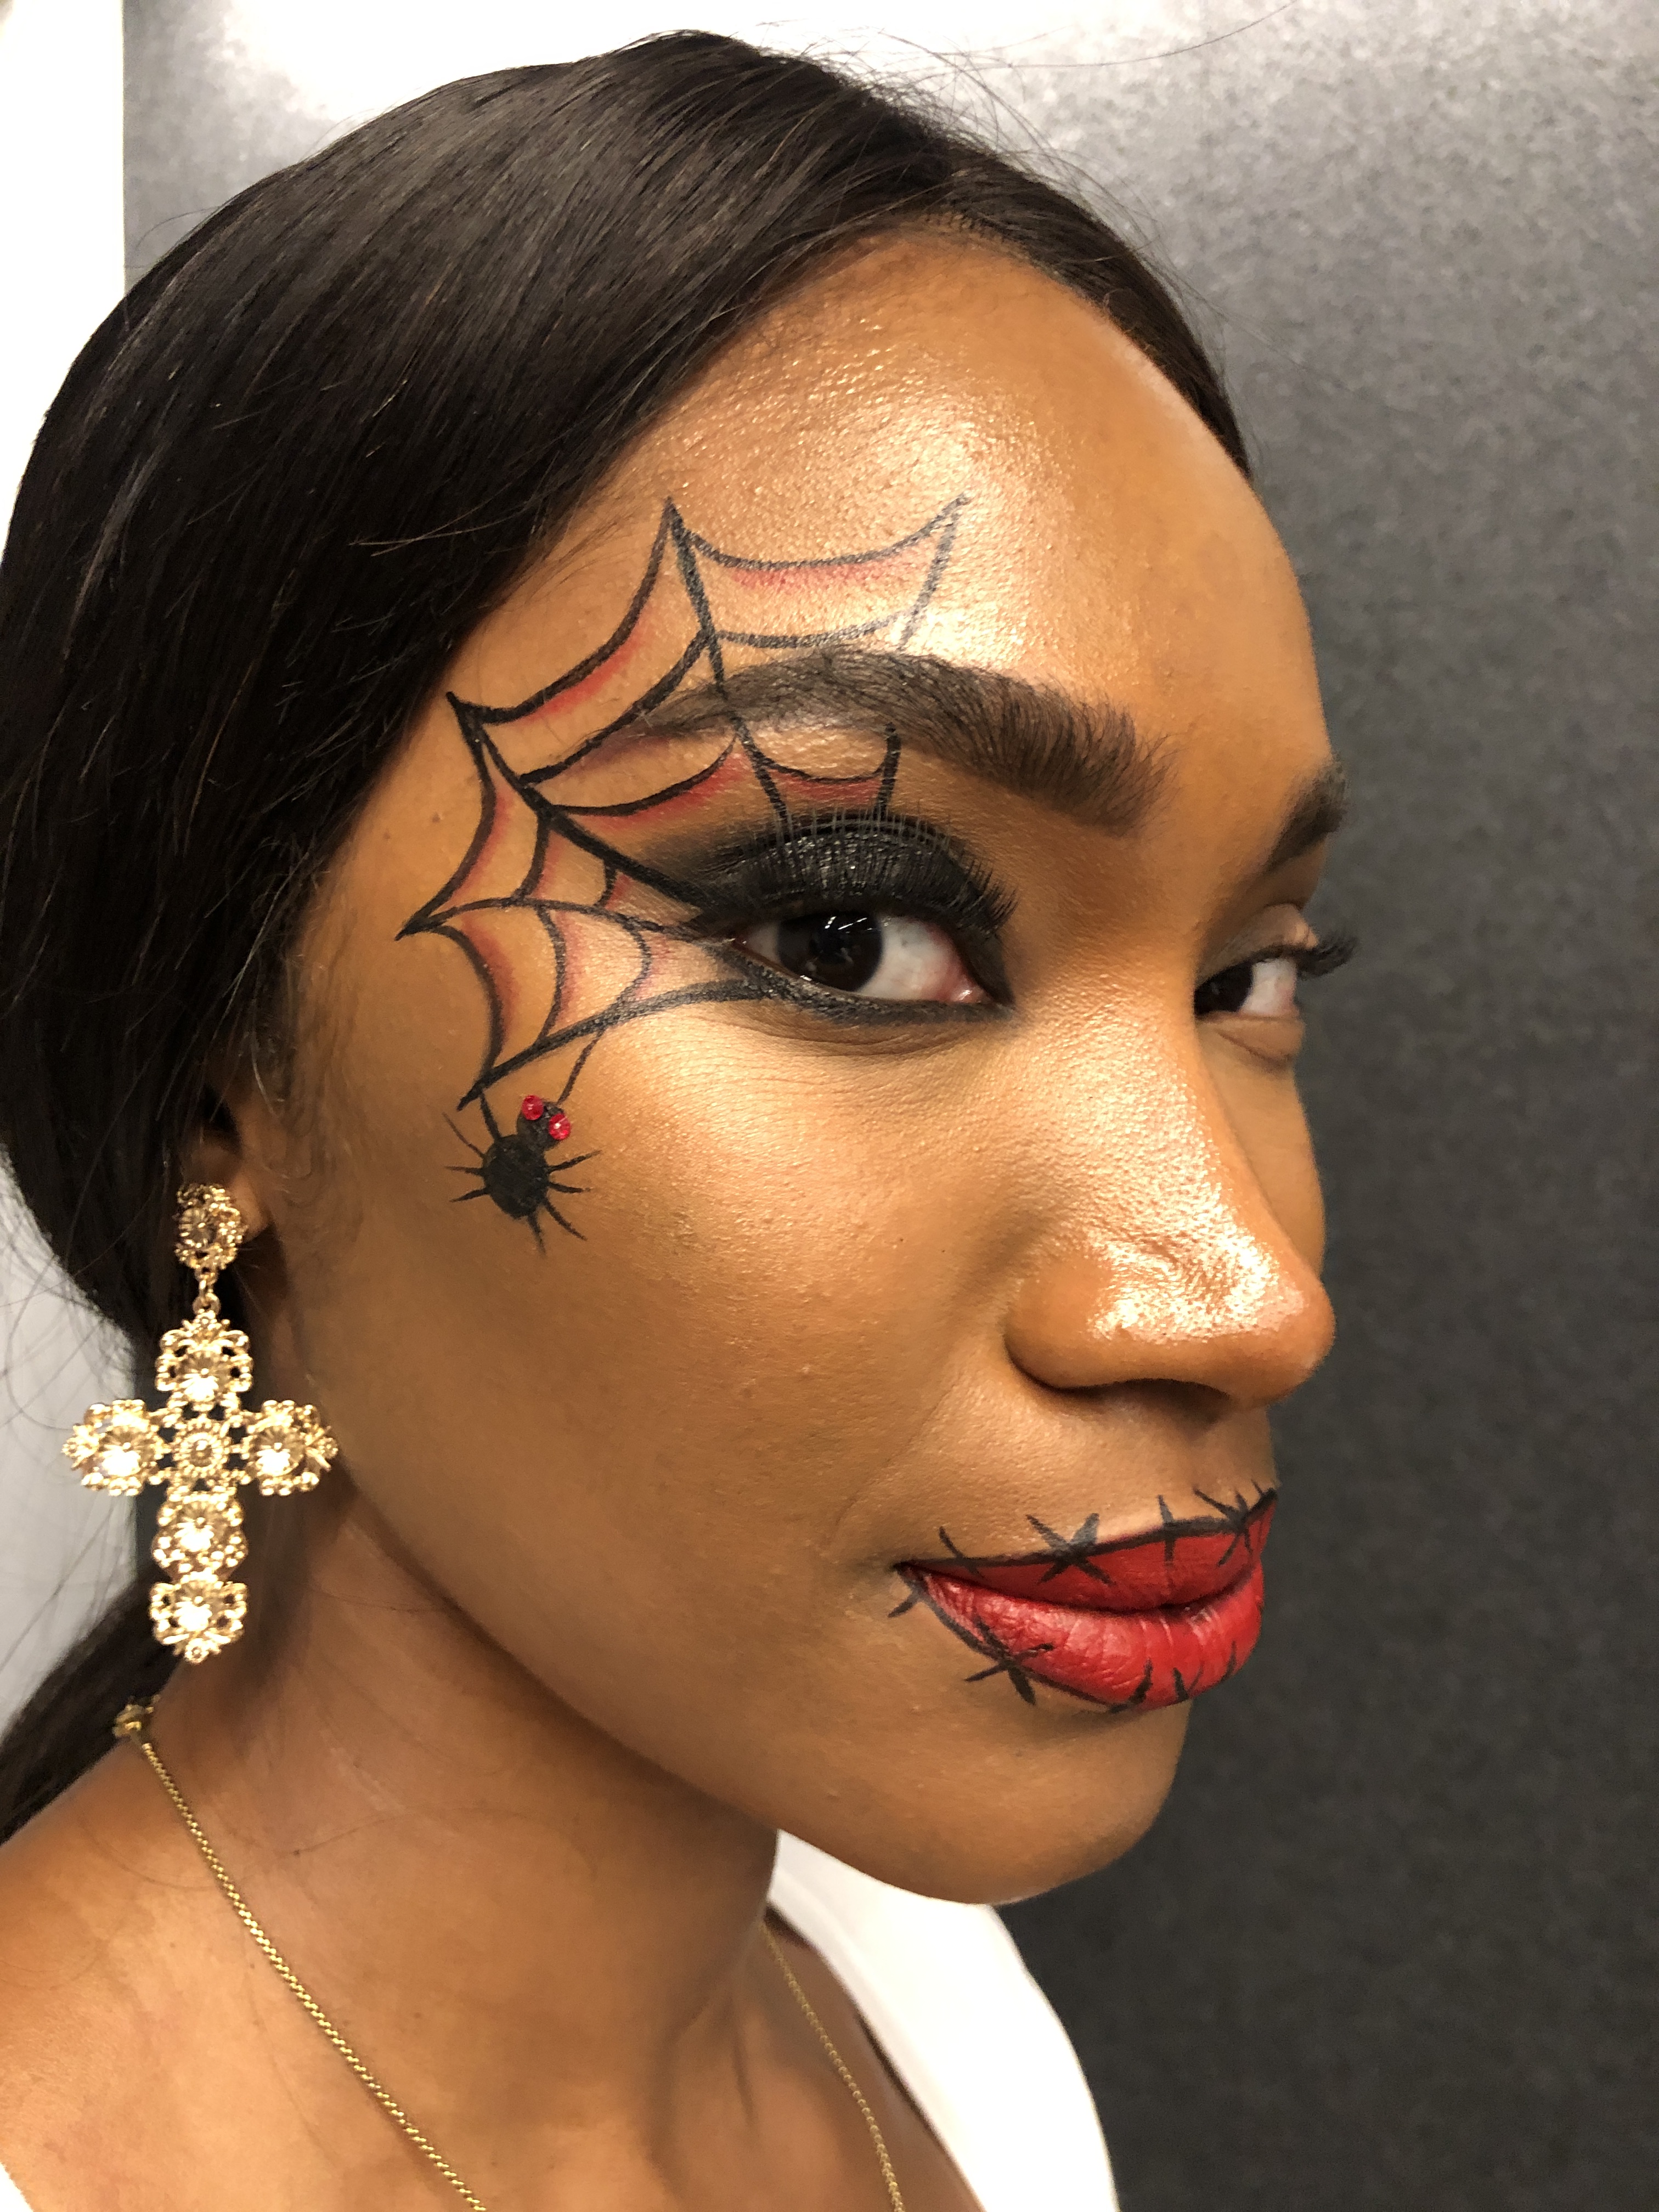 beautiful halloween makeup